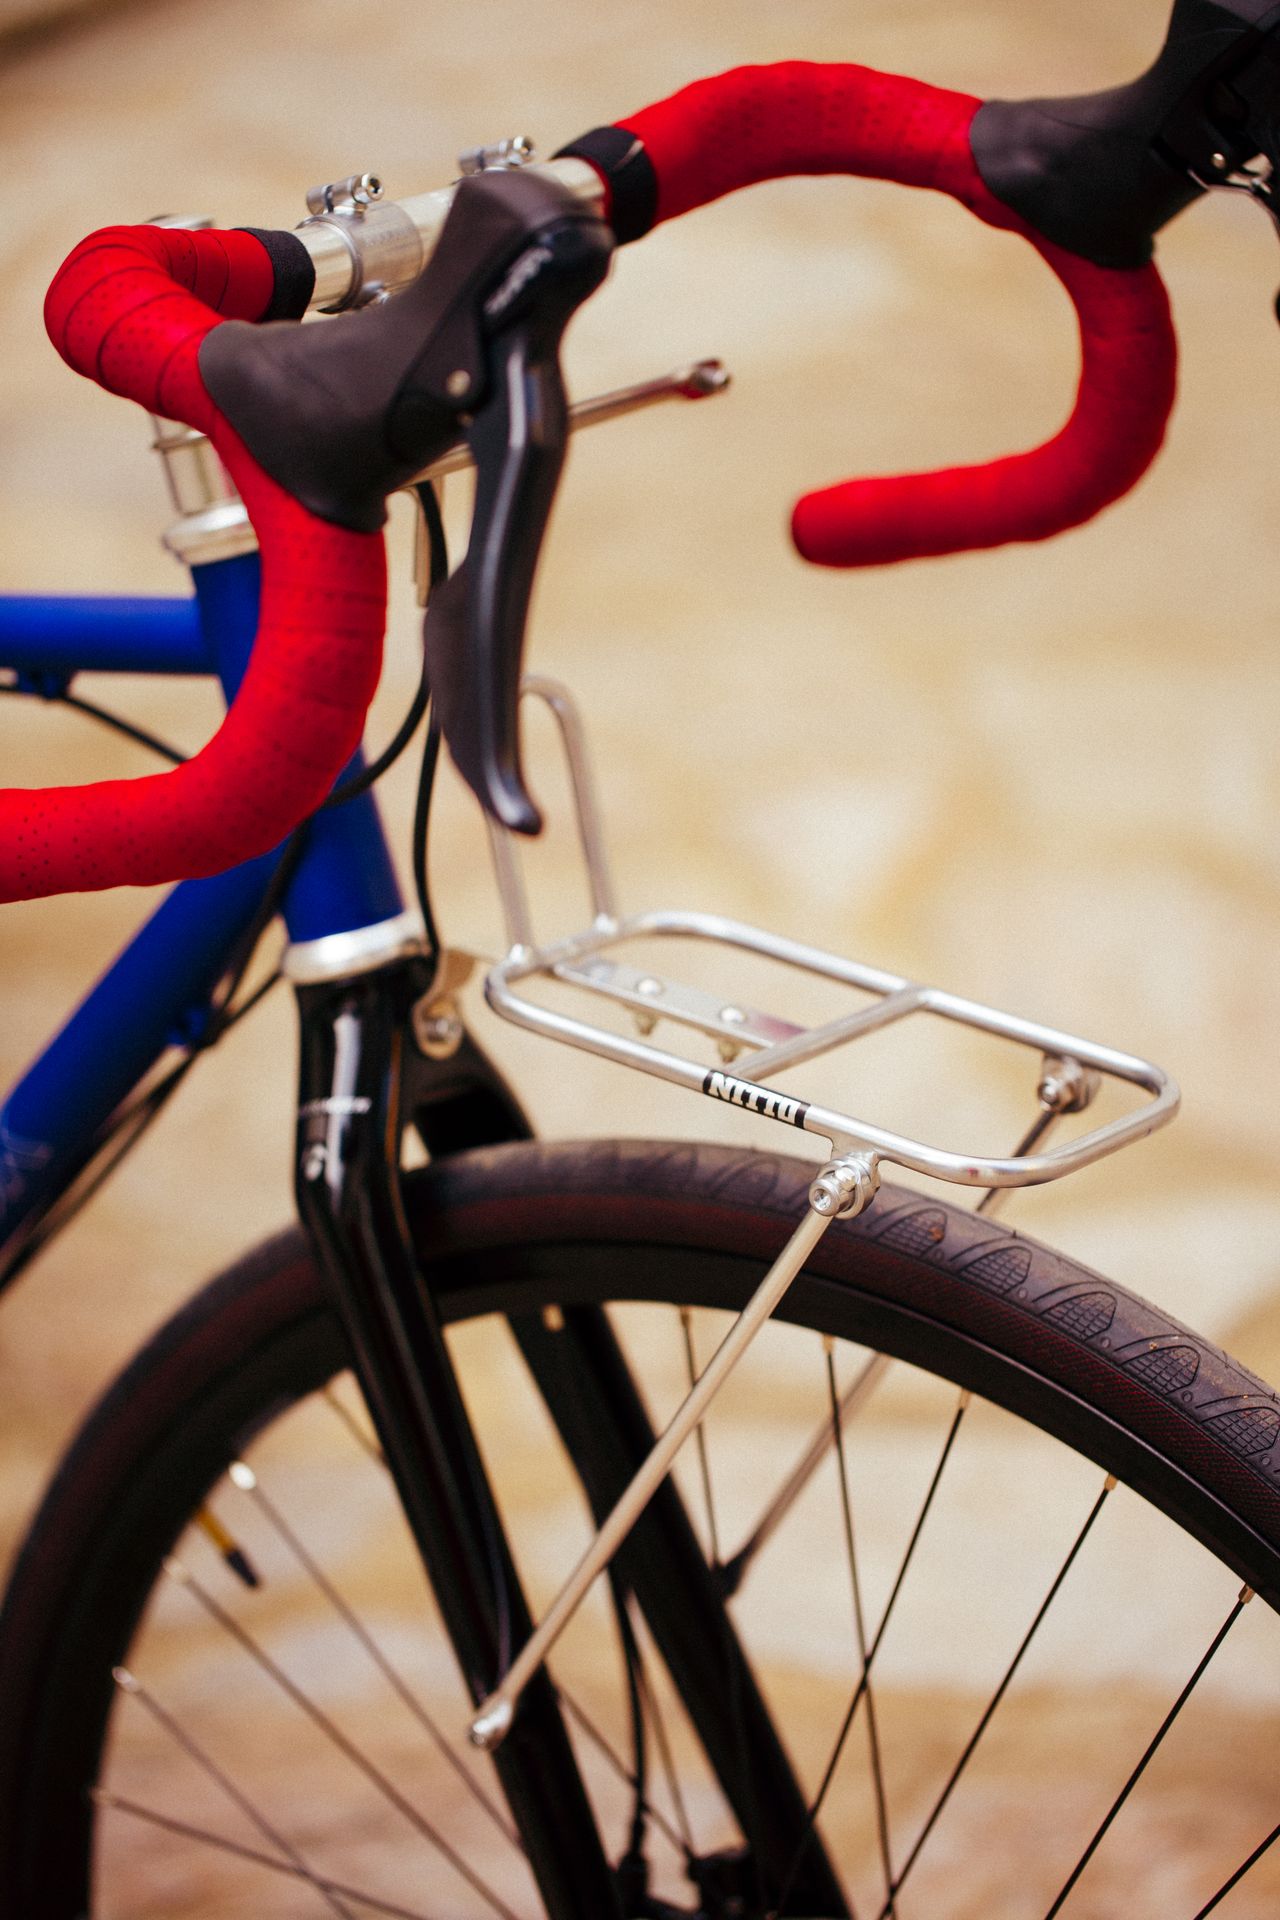 Magasin de cycles et atelier de réparation velo et montage vélo à la carte à Paris 13eme spécialisé dans le gravel et le voyage. 